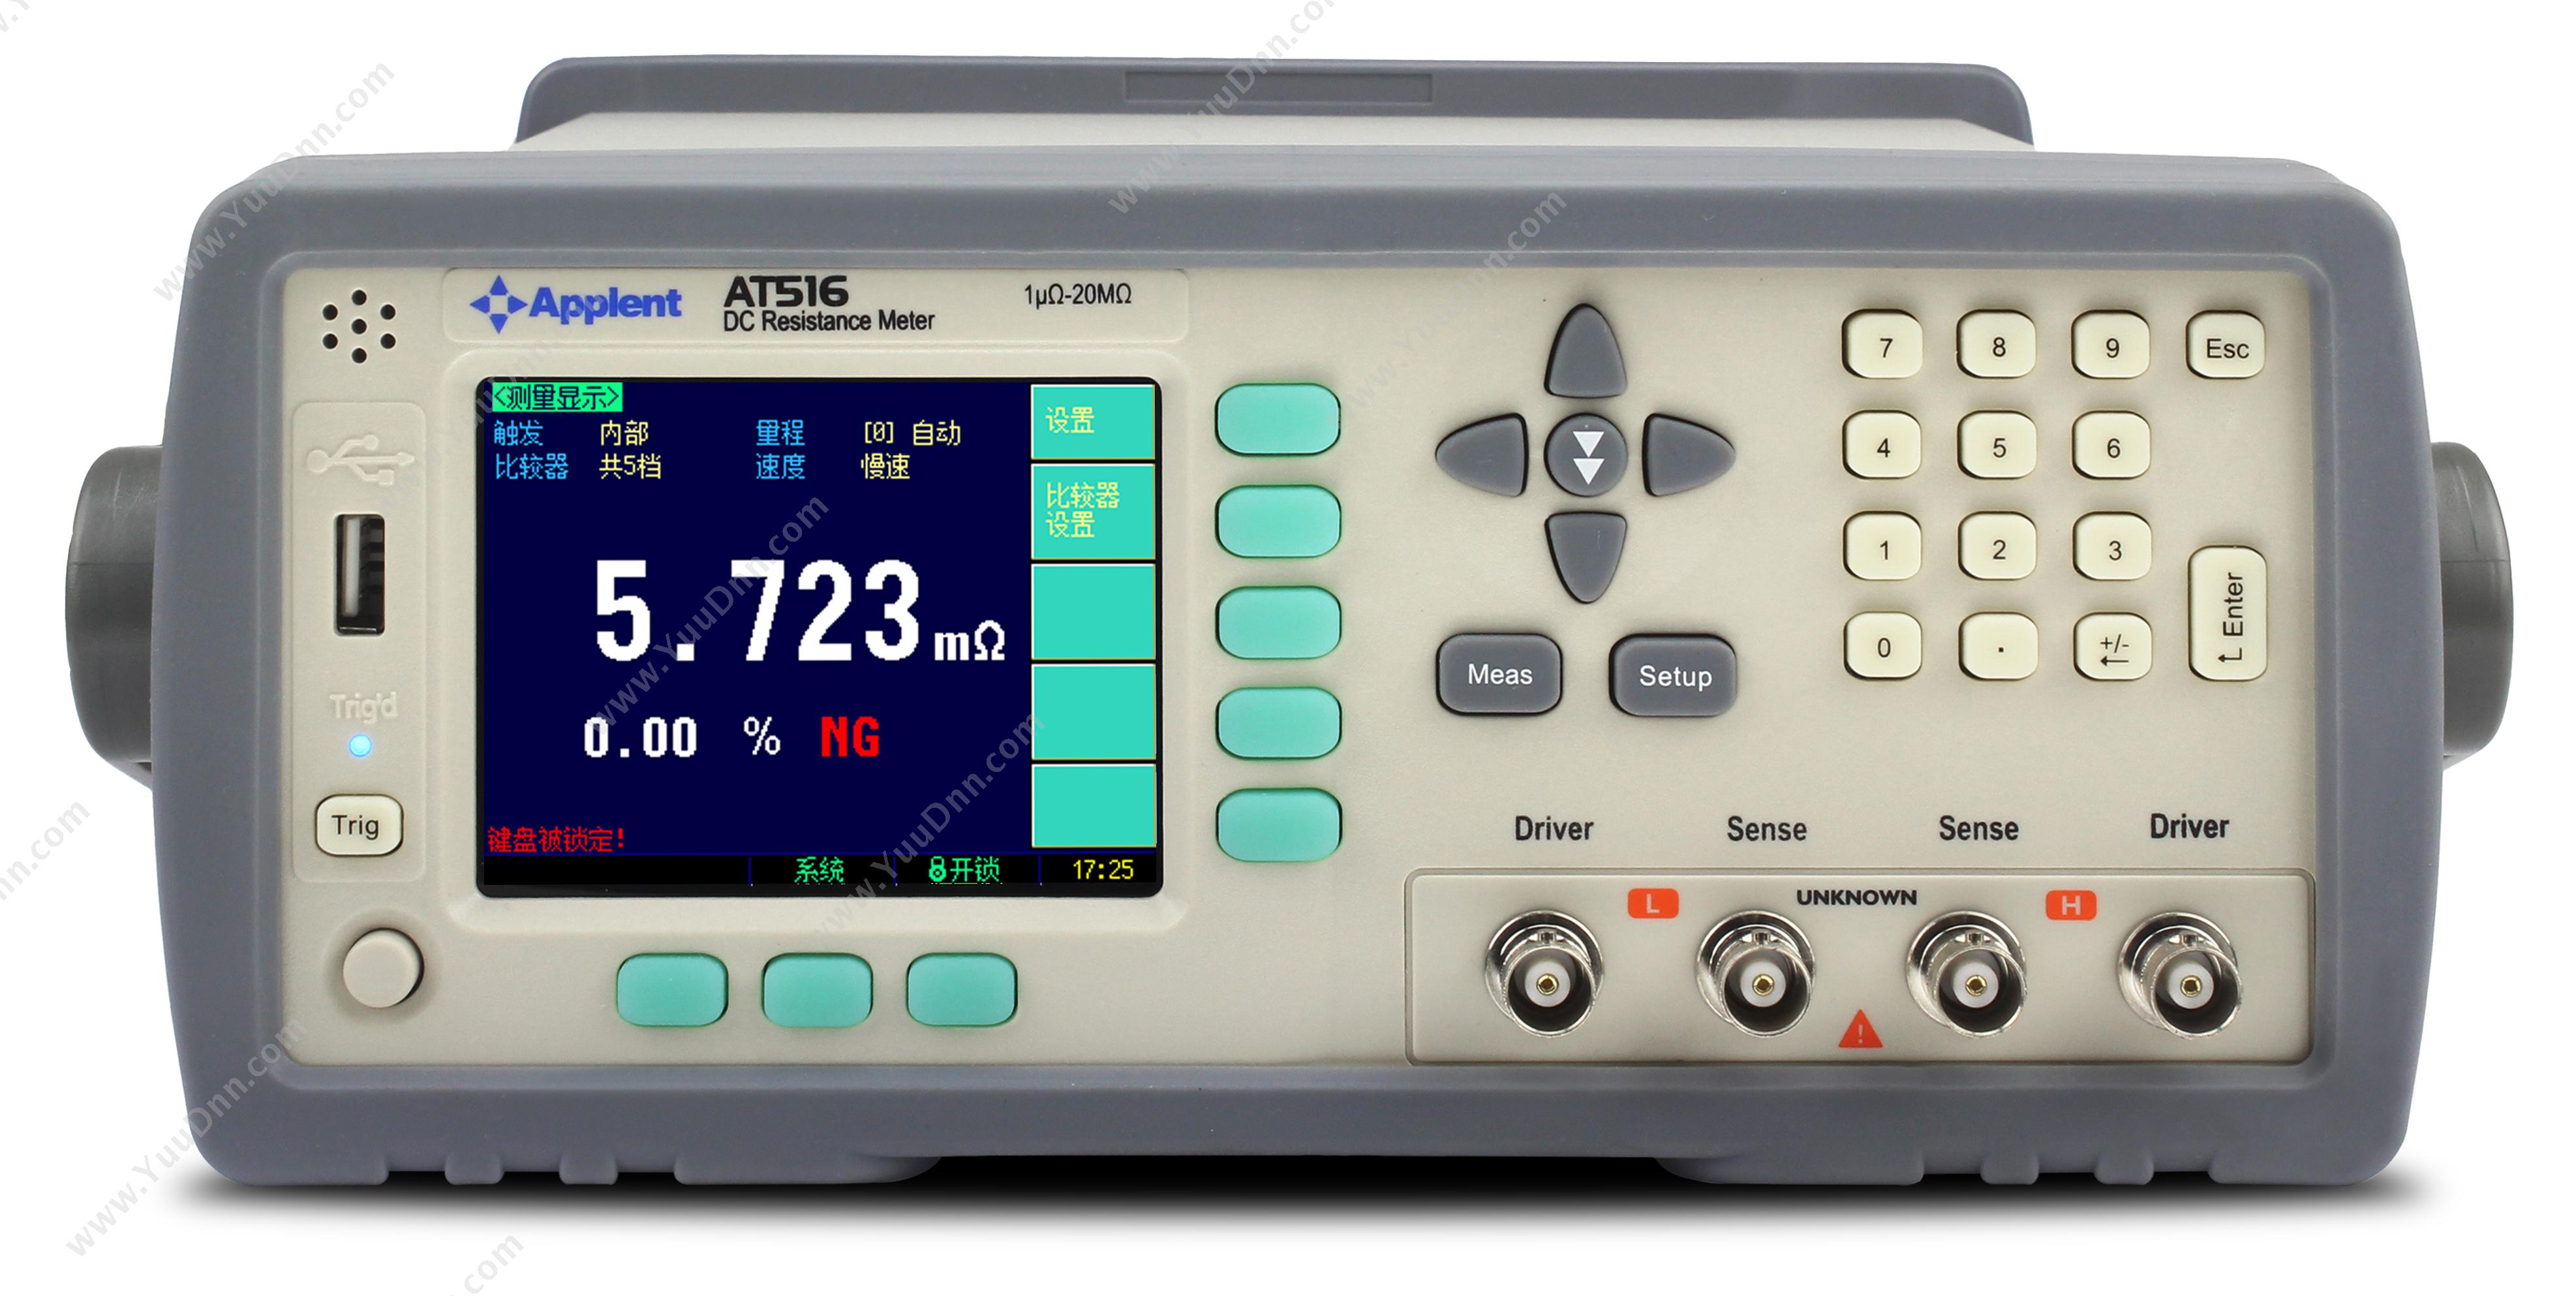 常州安柏 Applent AT516 直流电阻测试仪(1μΩ~20MΩ) 电阻测量仪表